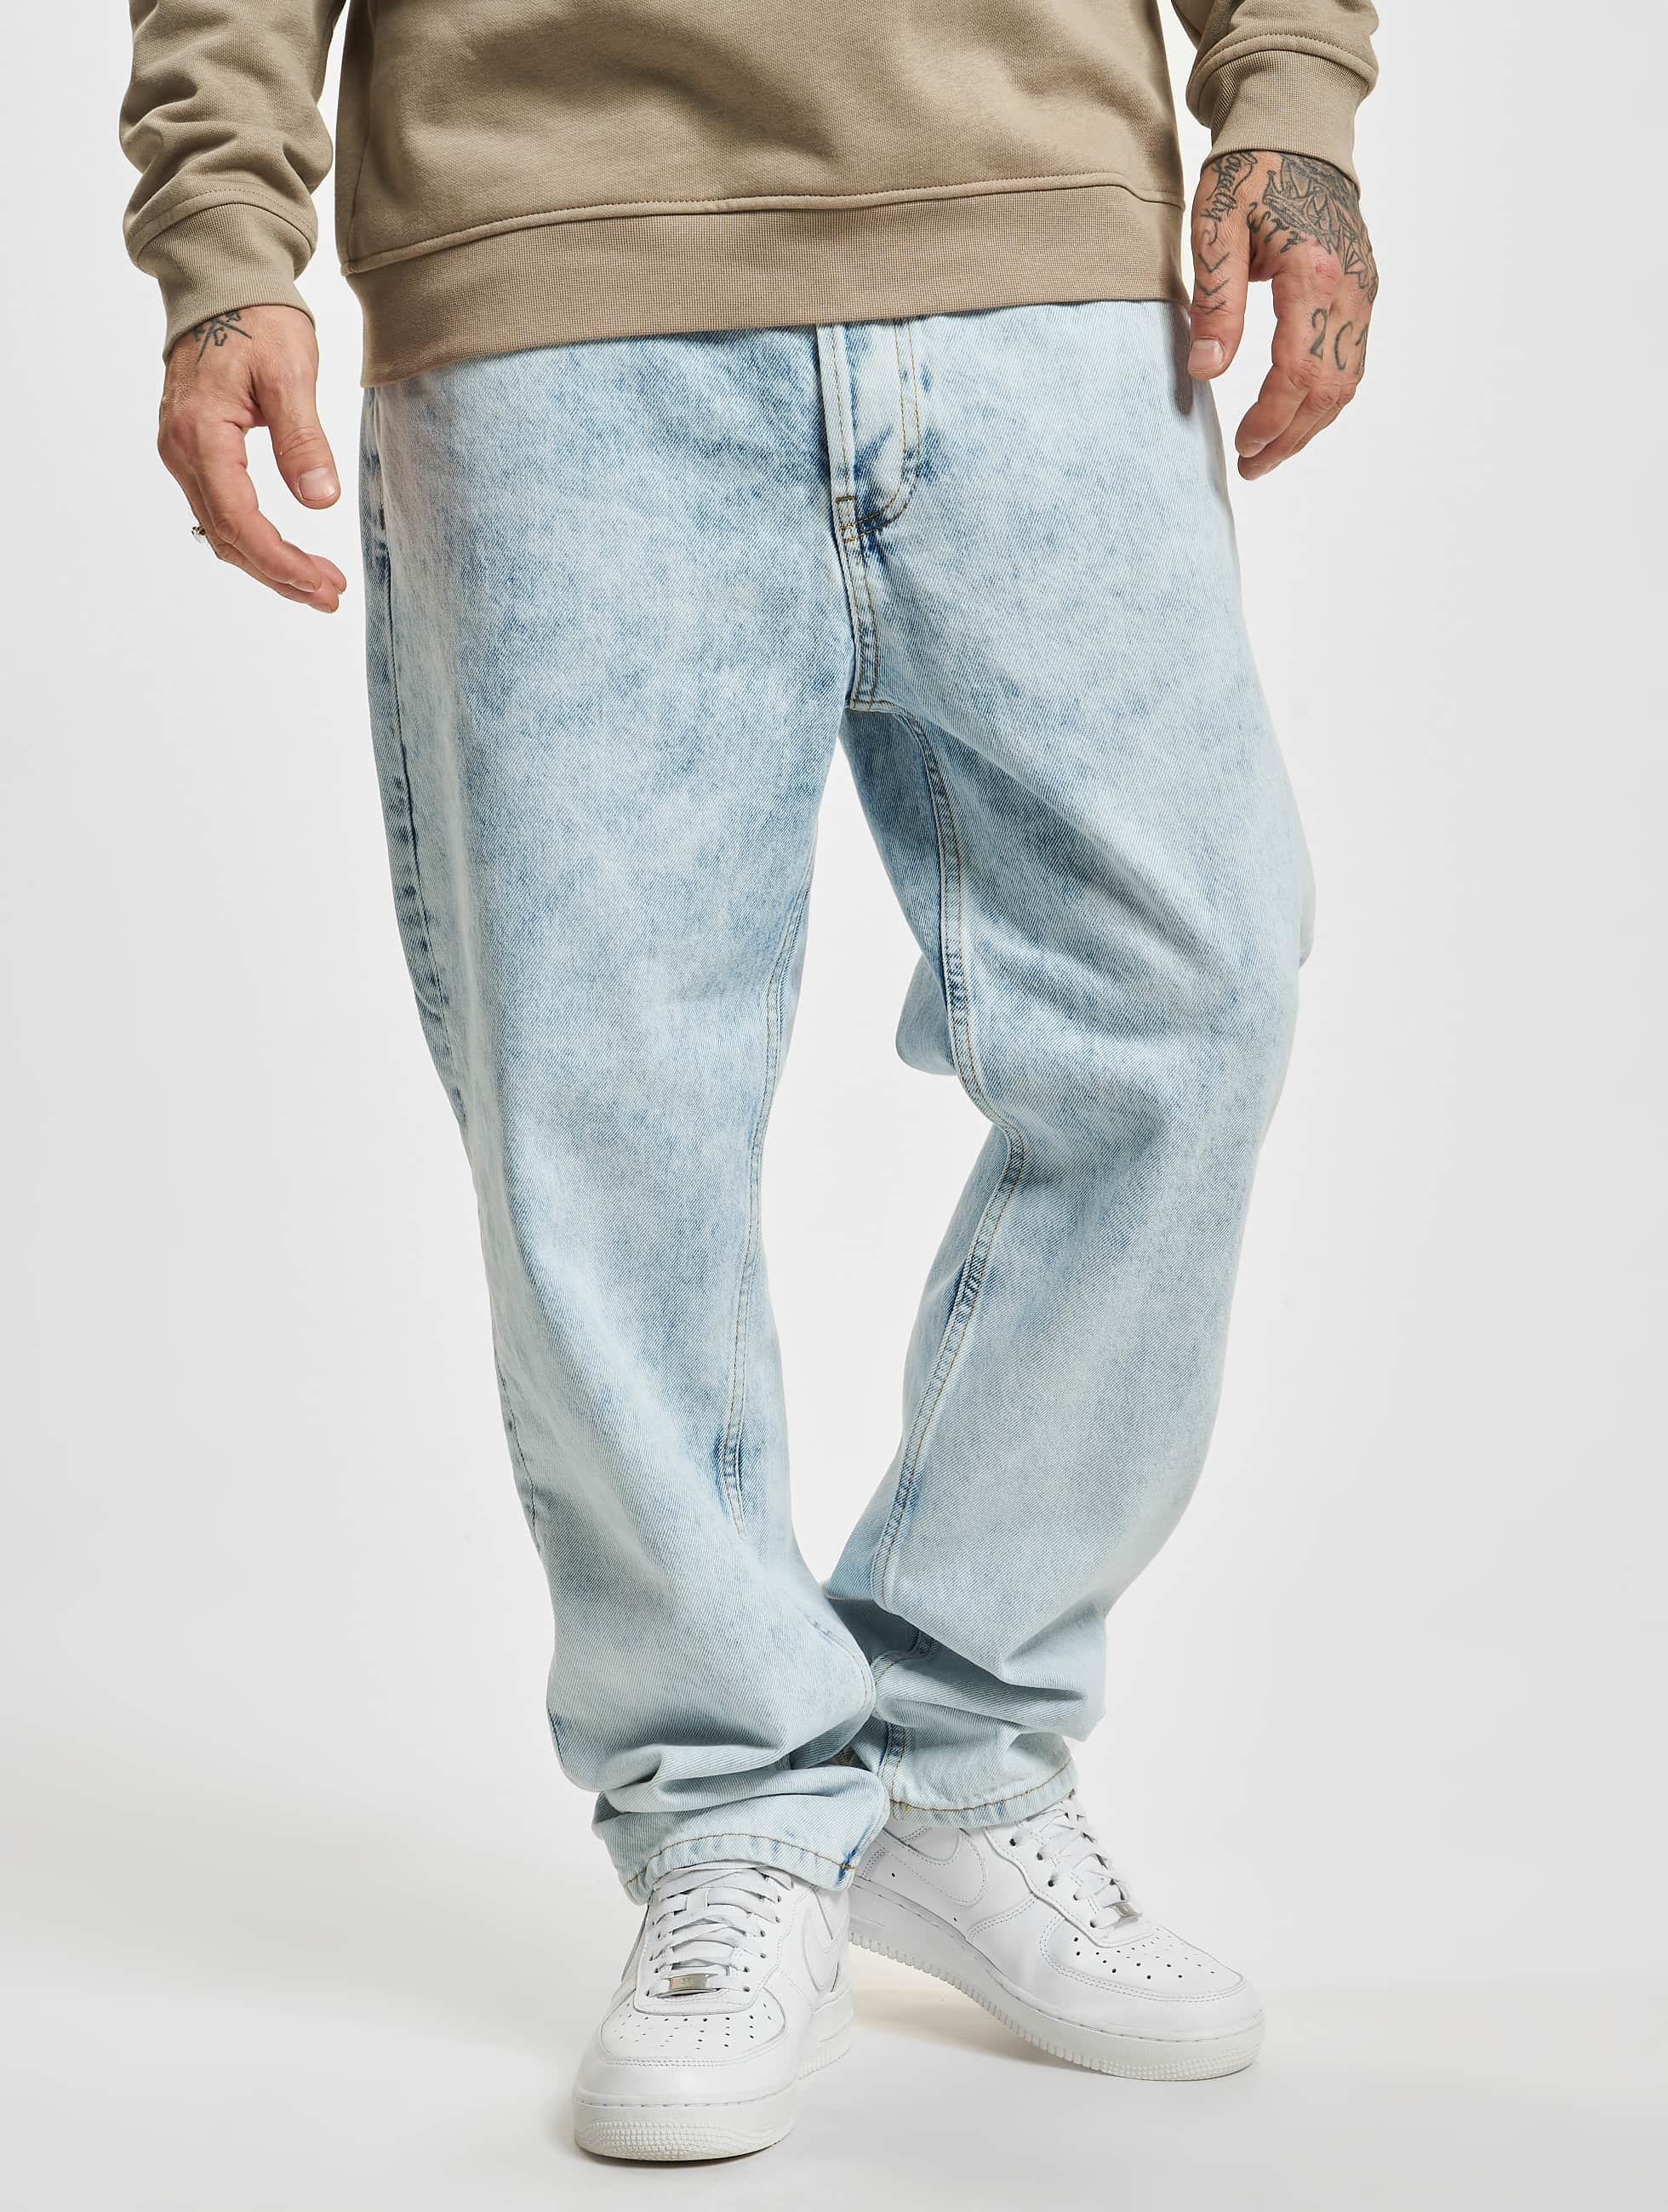 Waakzaam Gevangene Kelder 2Y Premium Jeans / Baggy jeans Arsen in blauw 955286